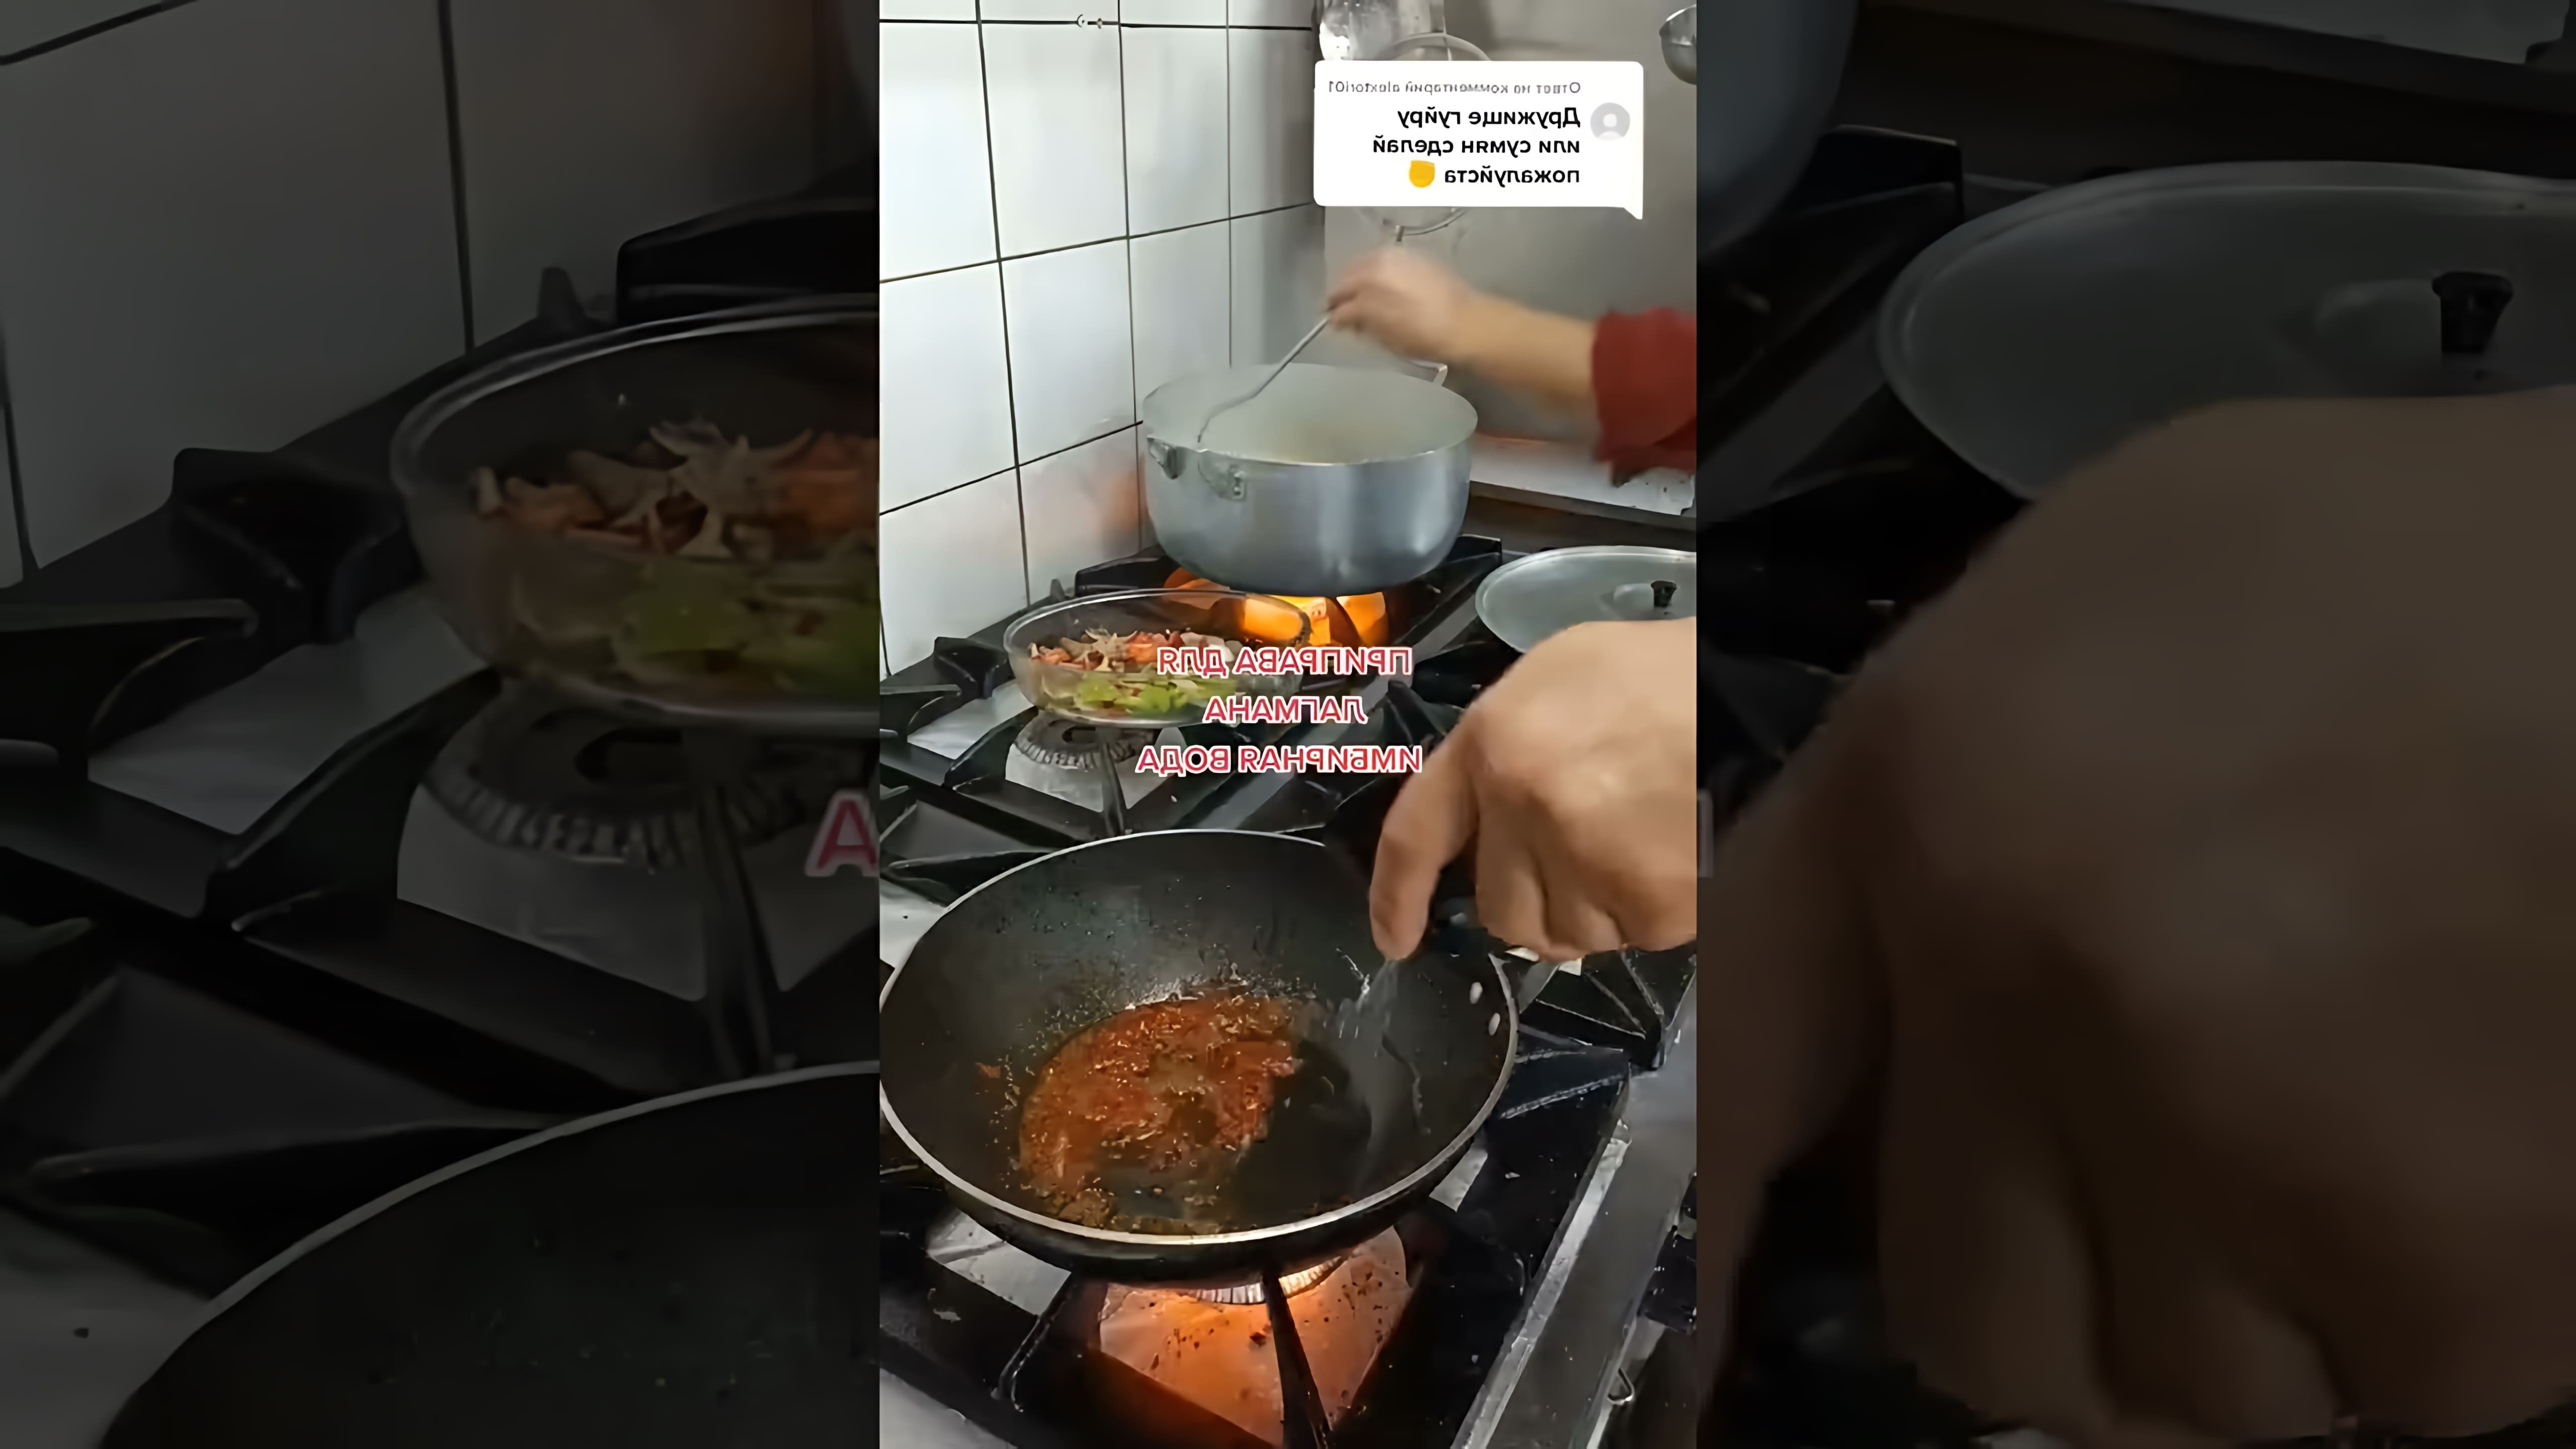 В этом видео-ролике вы увидите, как приготовить уйгурский лагман - традиционное блюдо уйгурской кухни